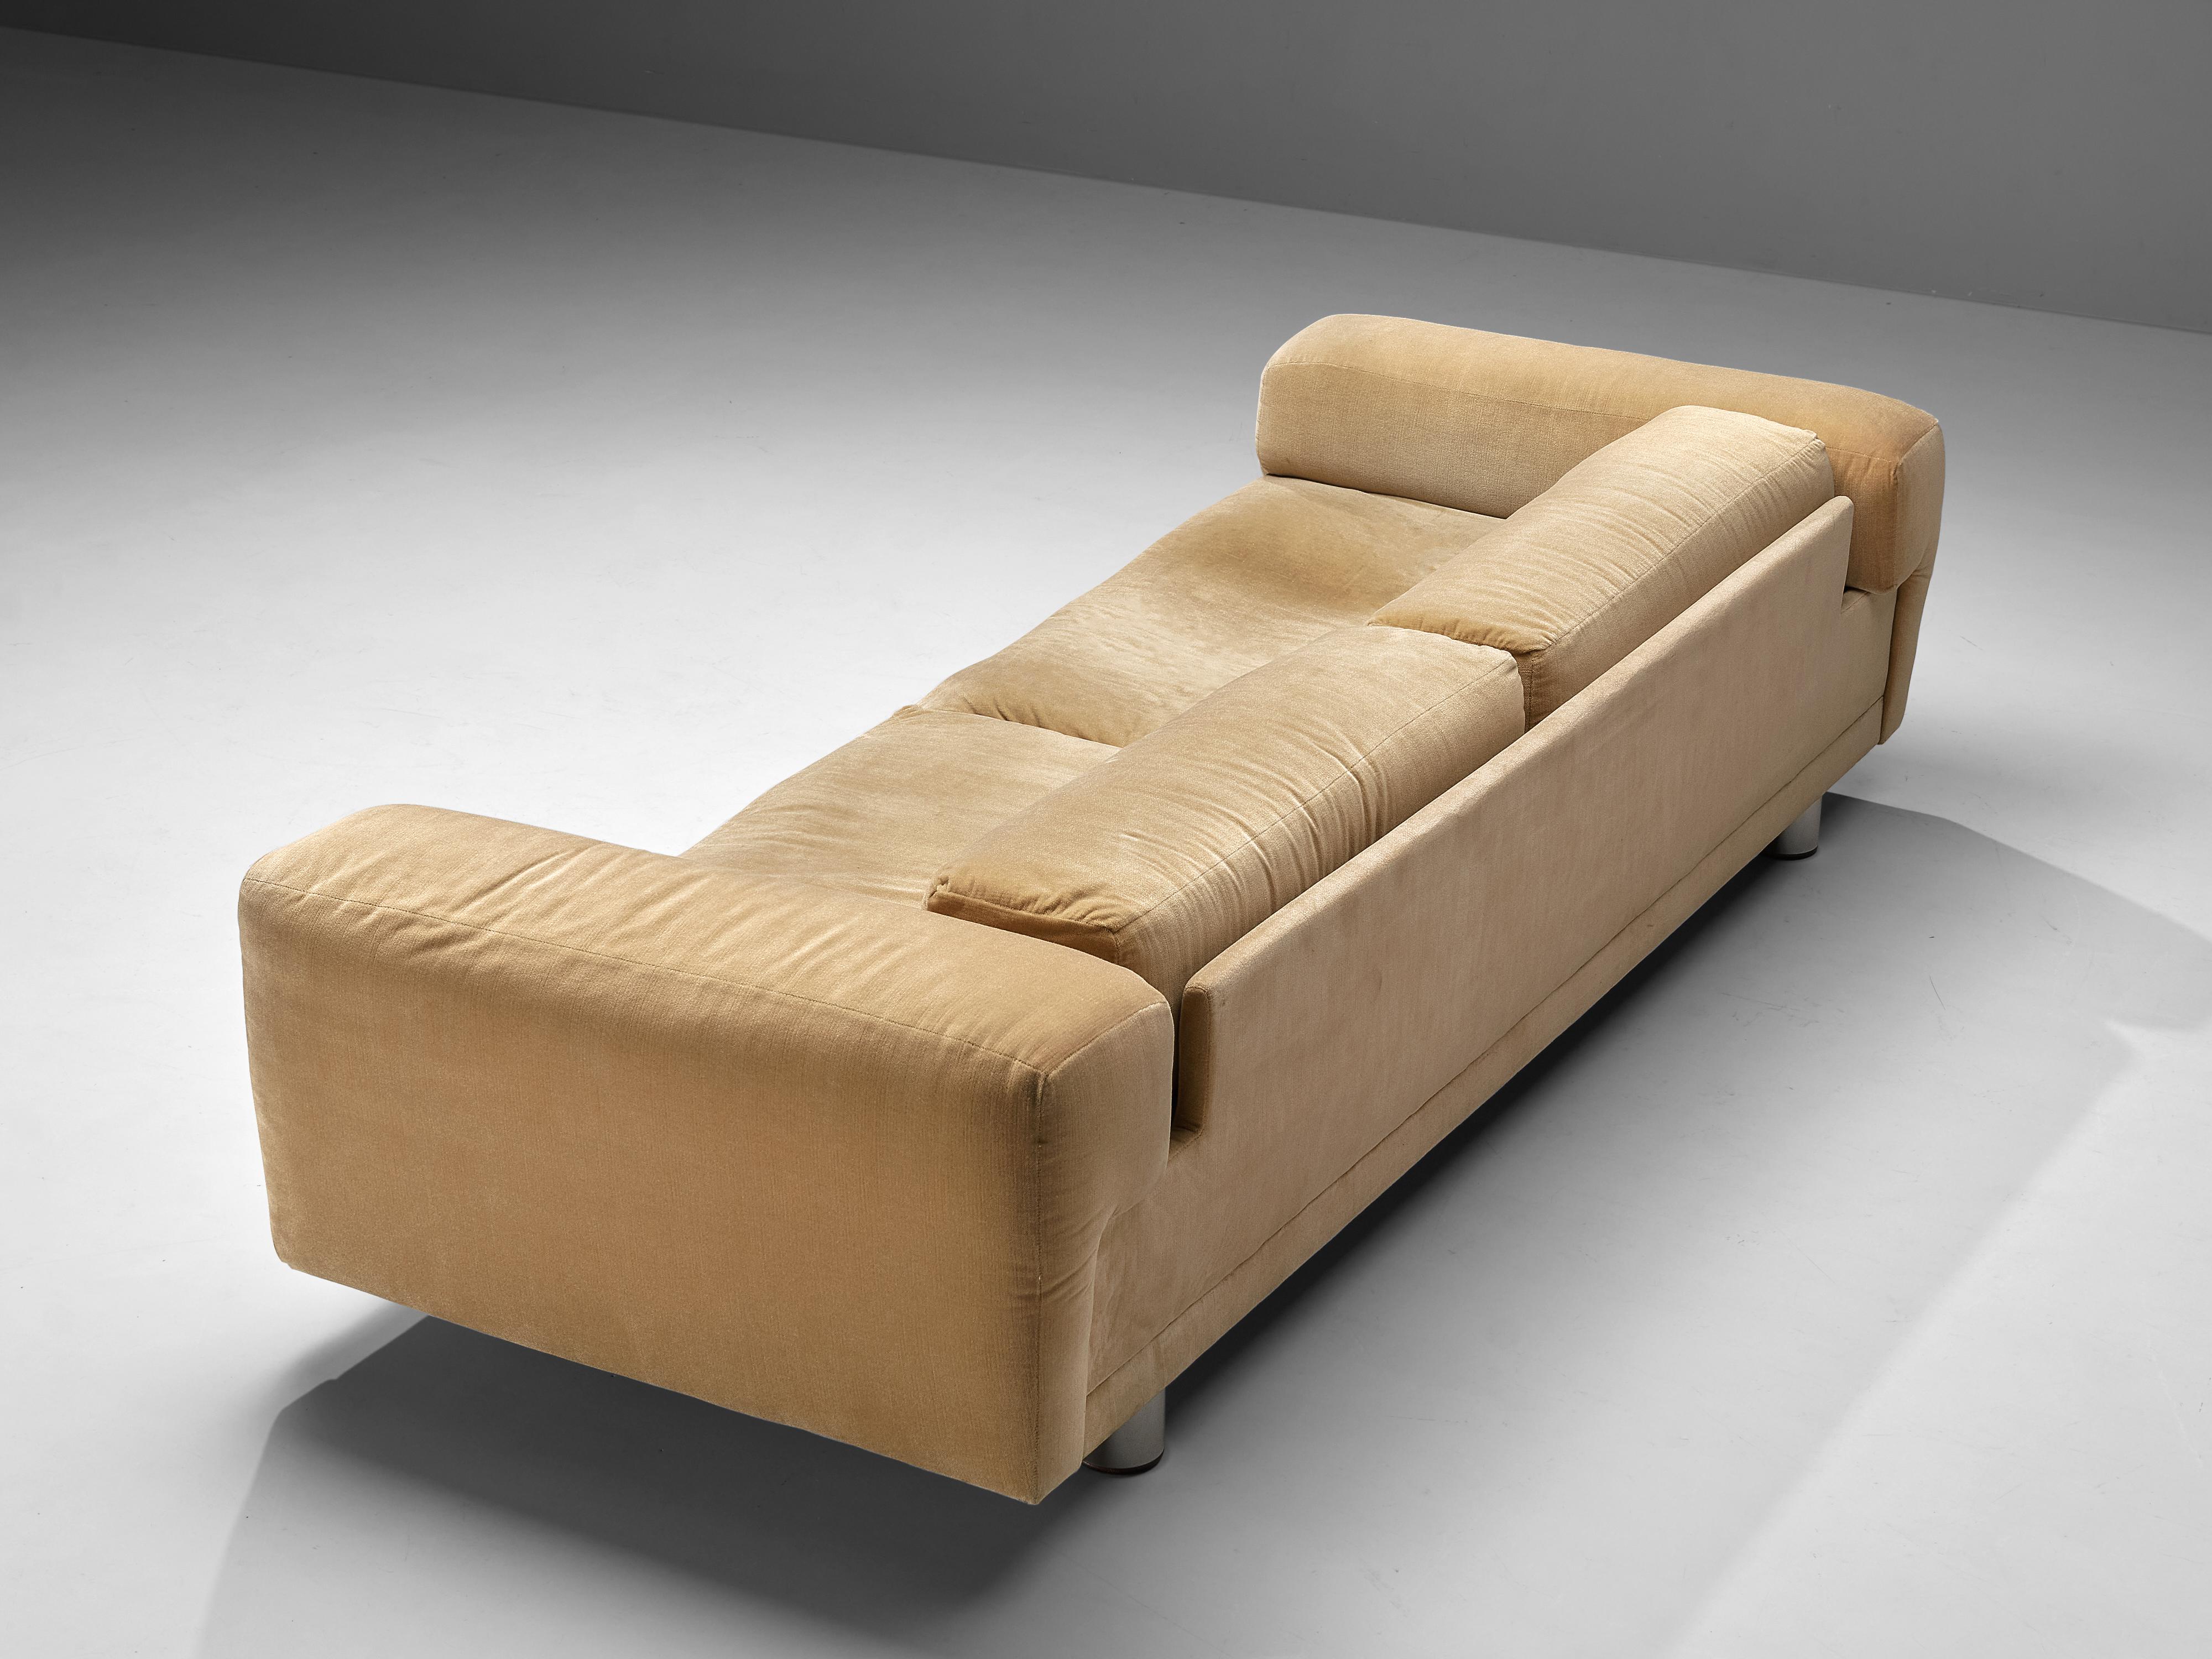 Metal Howard Keith Grand 'Diplomat' Sofa in Soft Yellow Upholstery